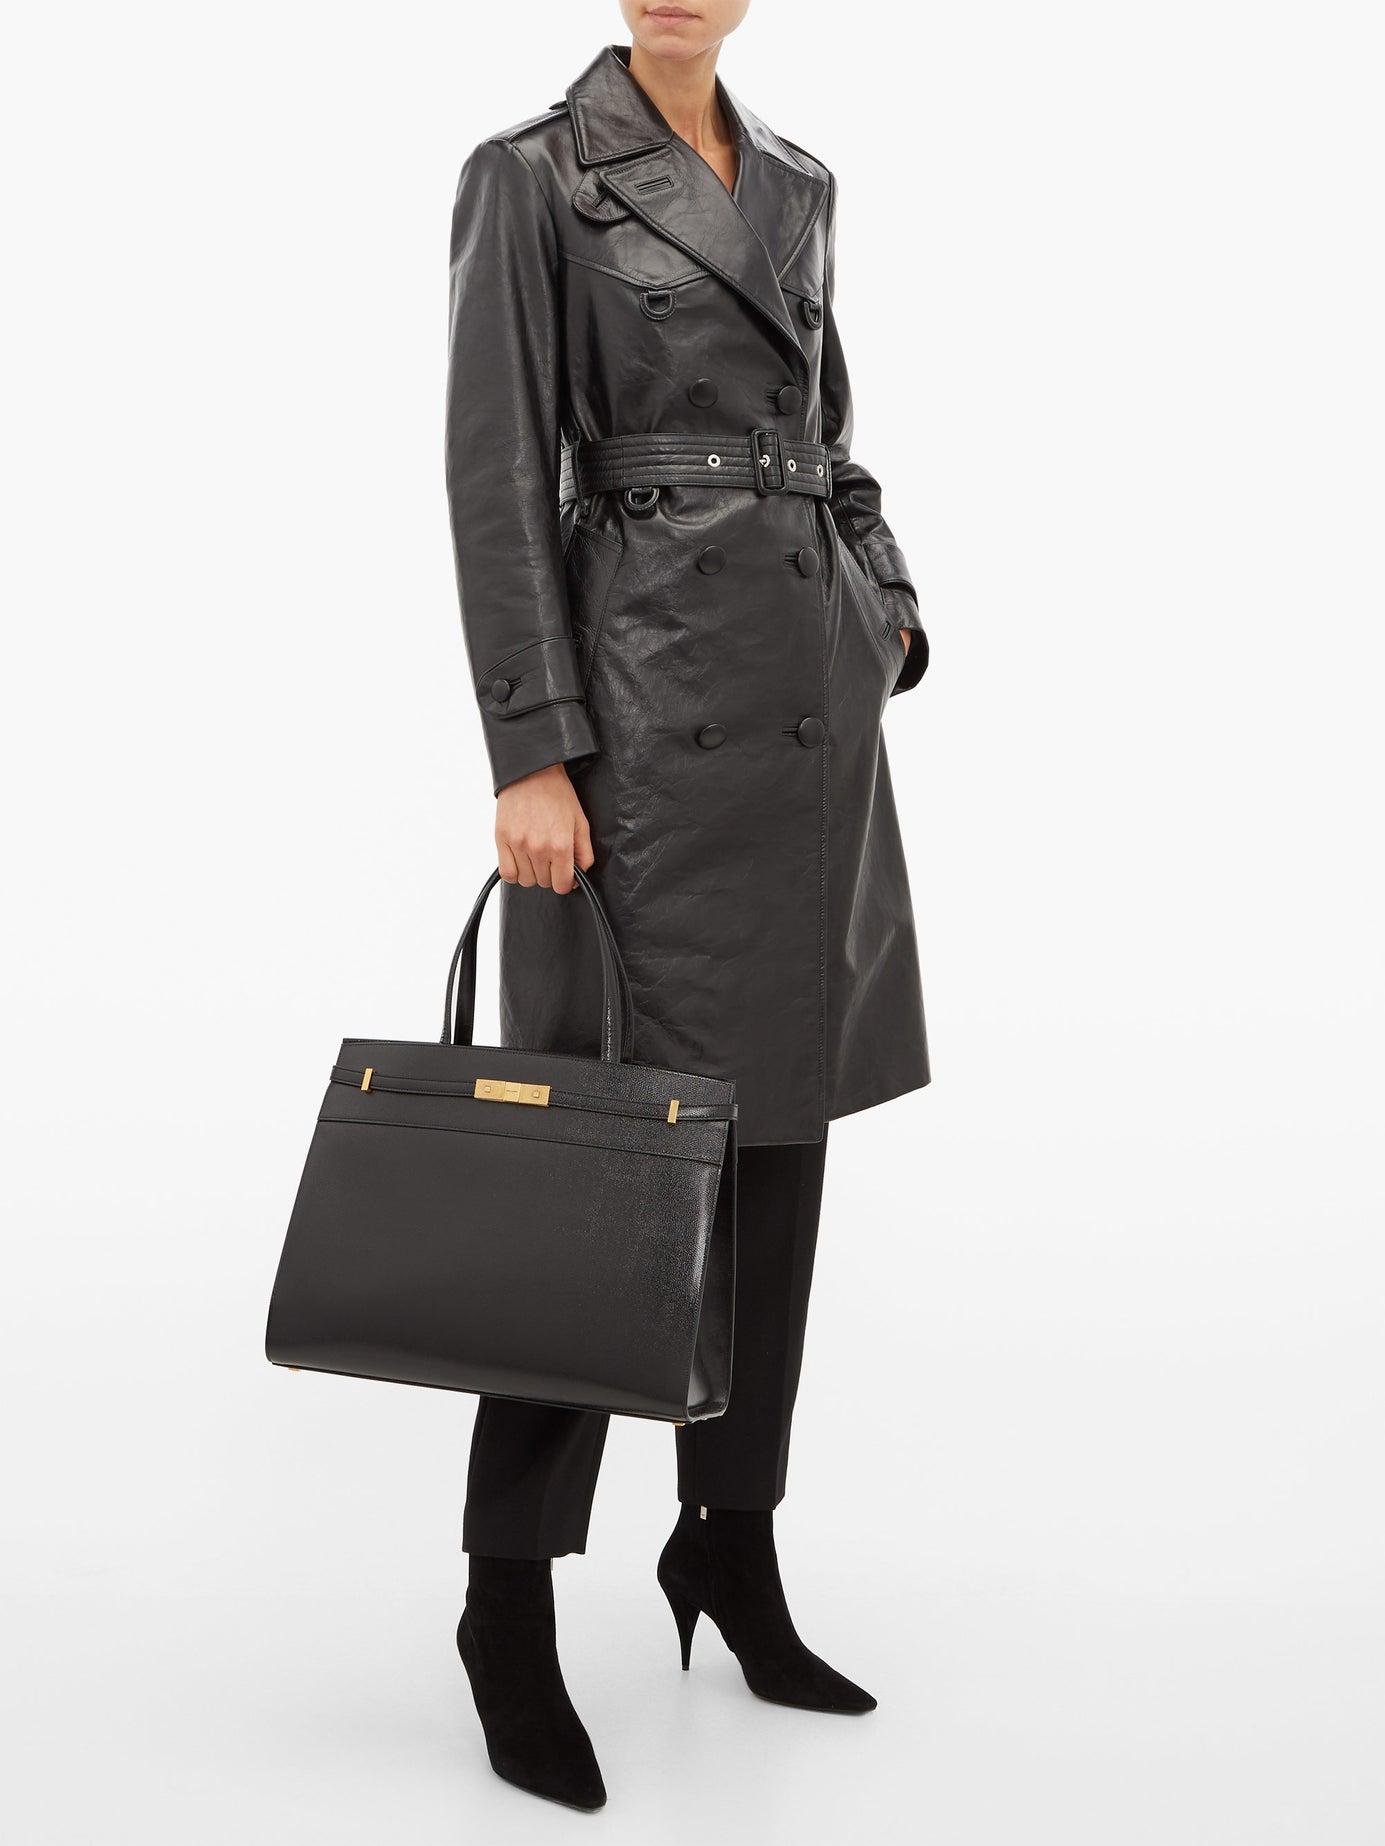 Saint Laurent Manhattan Medium Leather Tote Bag in Black